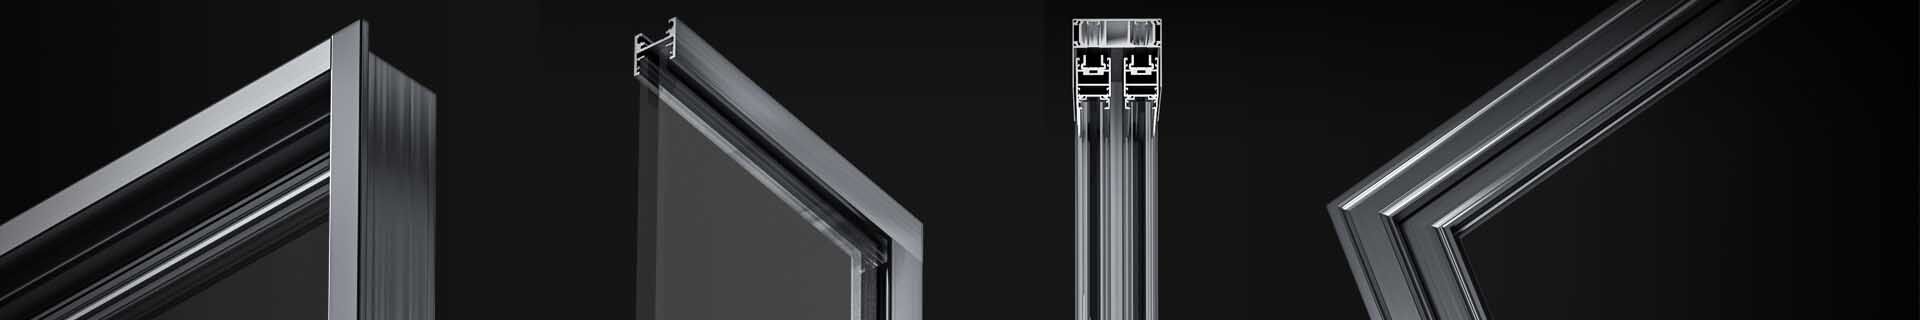 raised panel cabinet door profiles